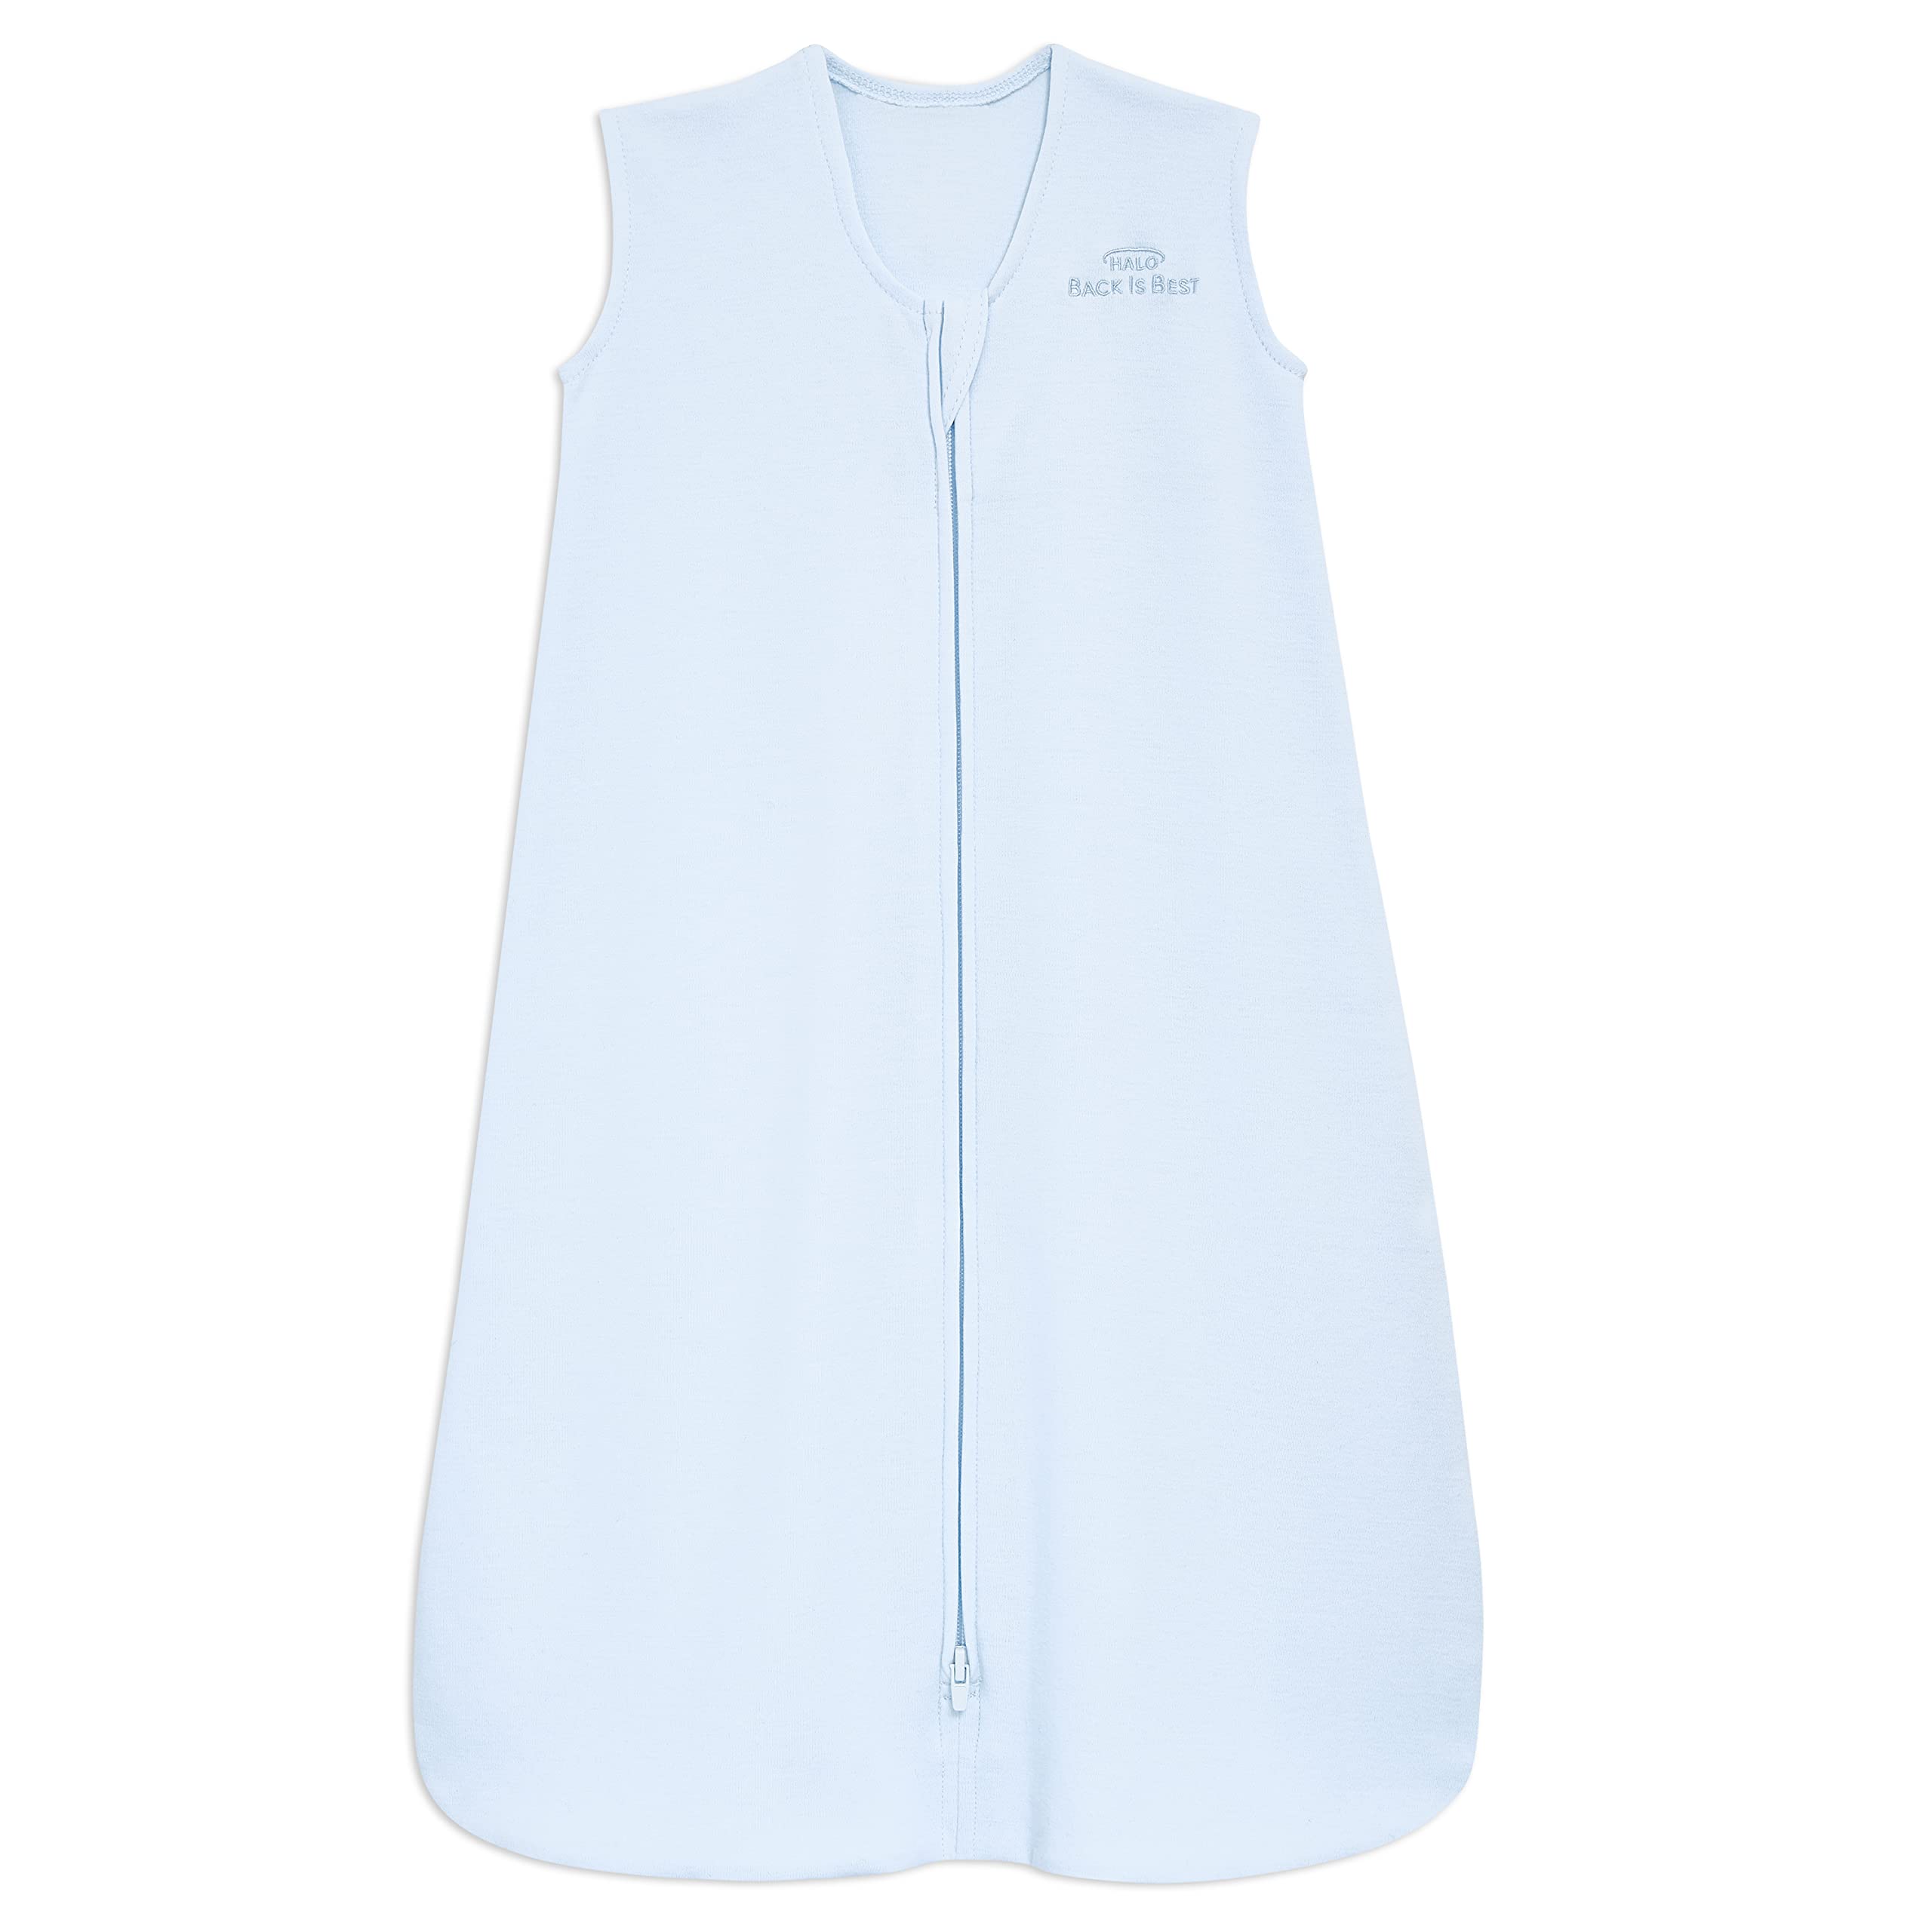 HALO Sleepsack, 100% Cotton Wearable Blanket, Swaddle Transition Sleeping Bag, TOG 0.5, Baby Blue, Medium